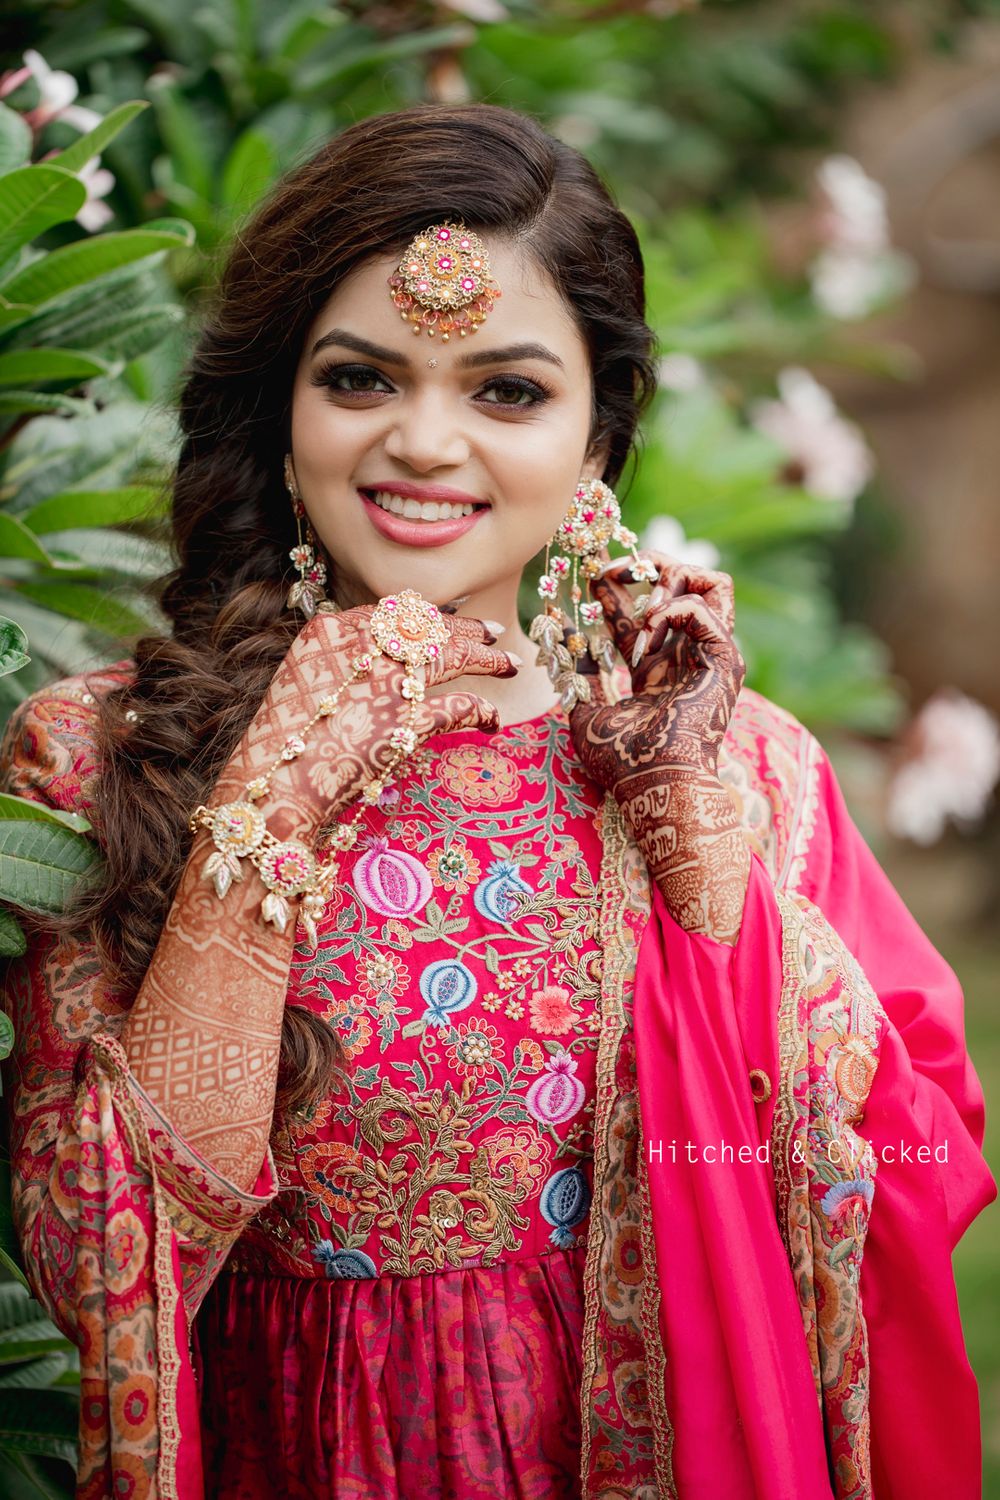 Photo From Surbhi Kanda Agarwal - By Bianca Louzado Creative Make-up and Hair Design